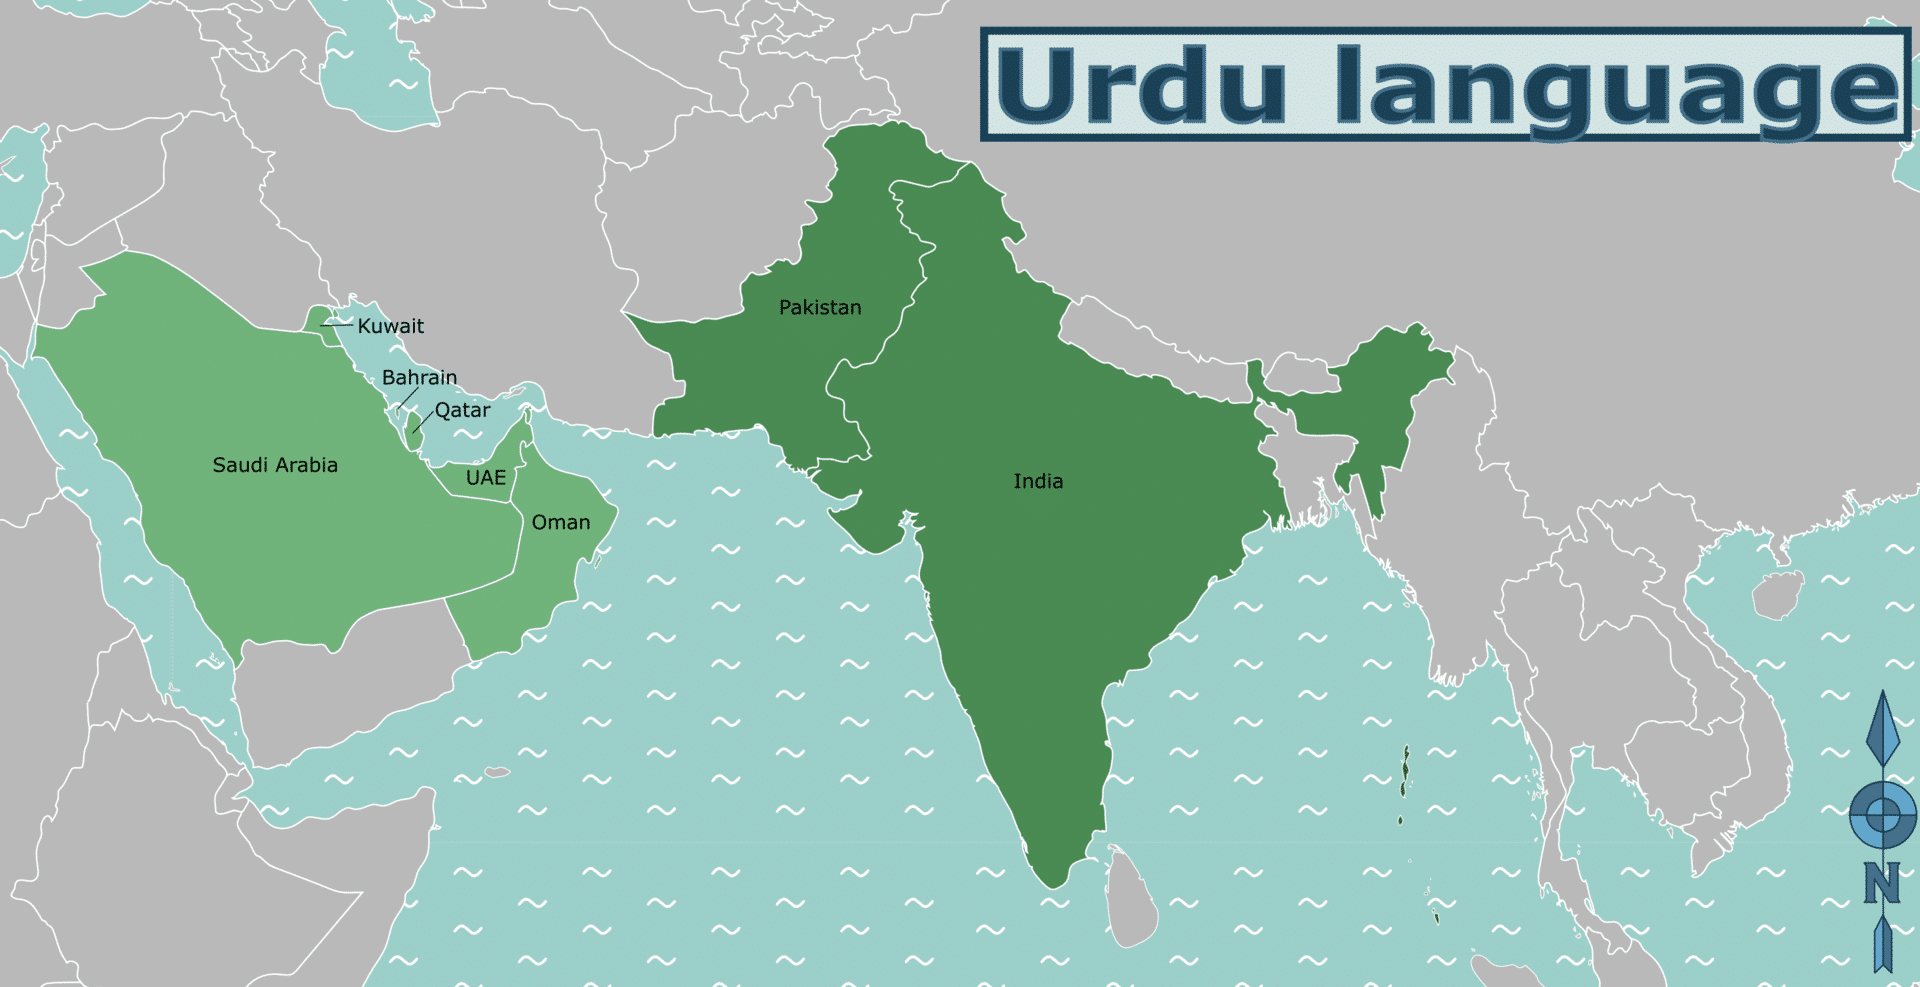 Where is Urdu spoken?